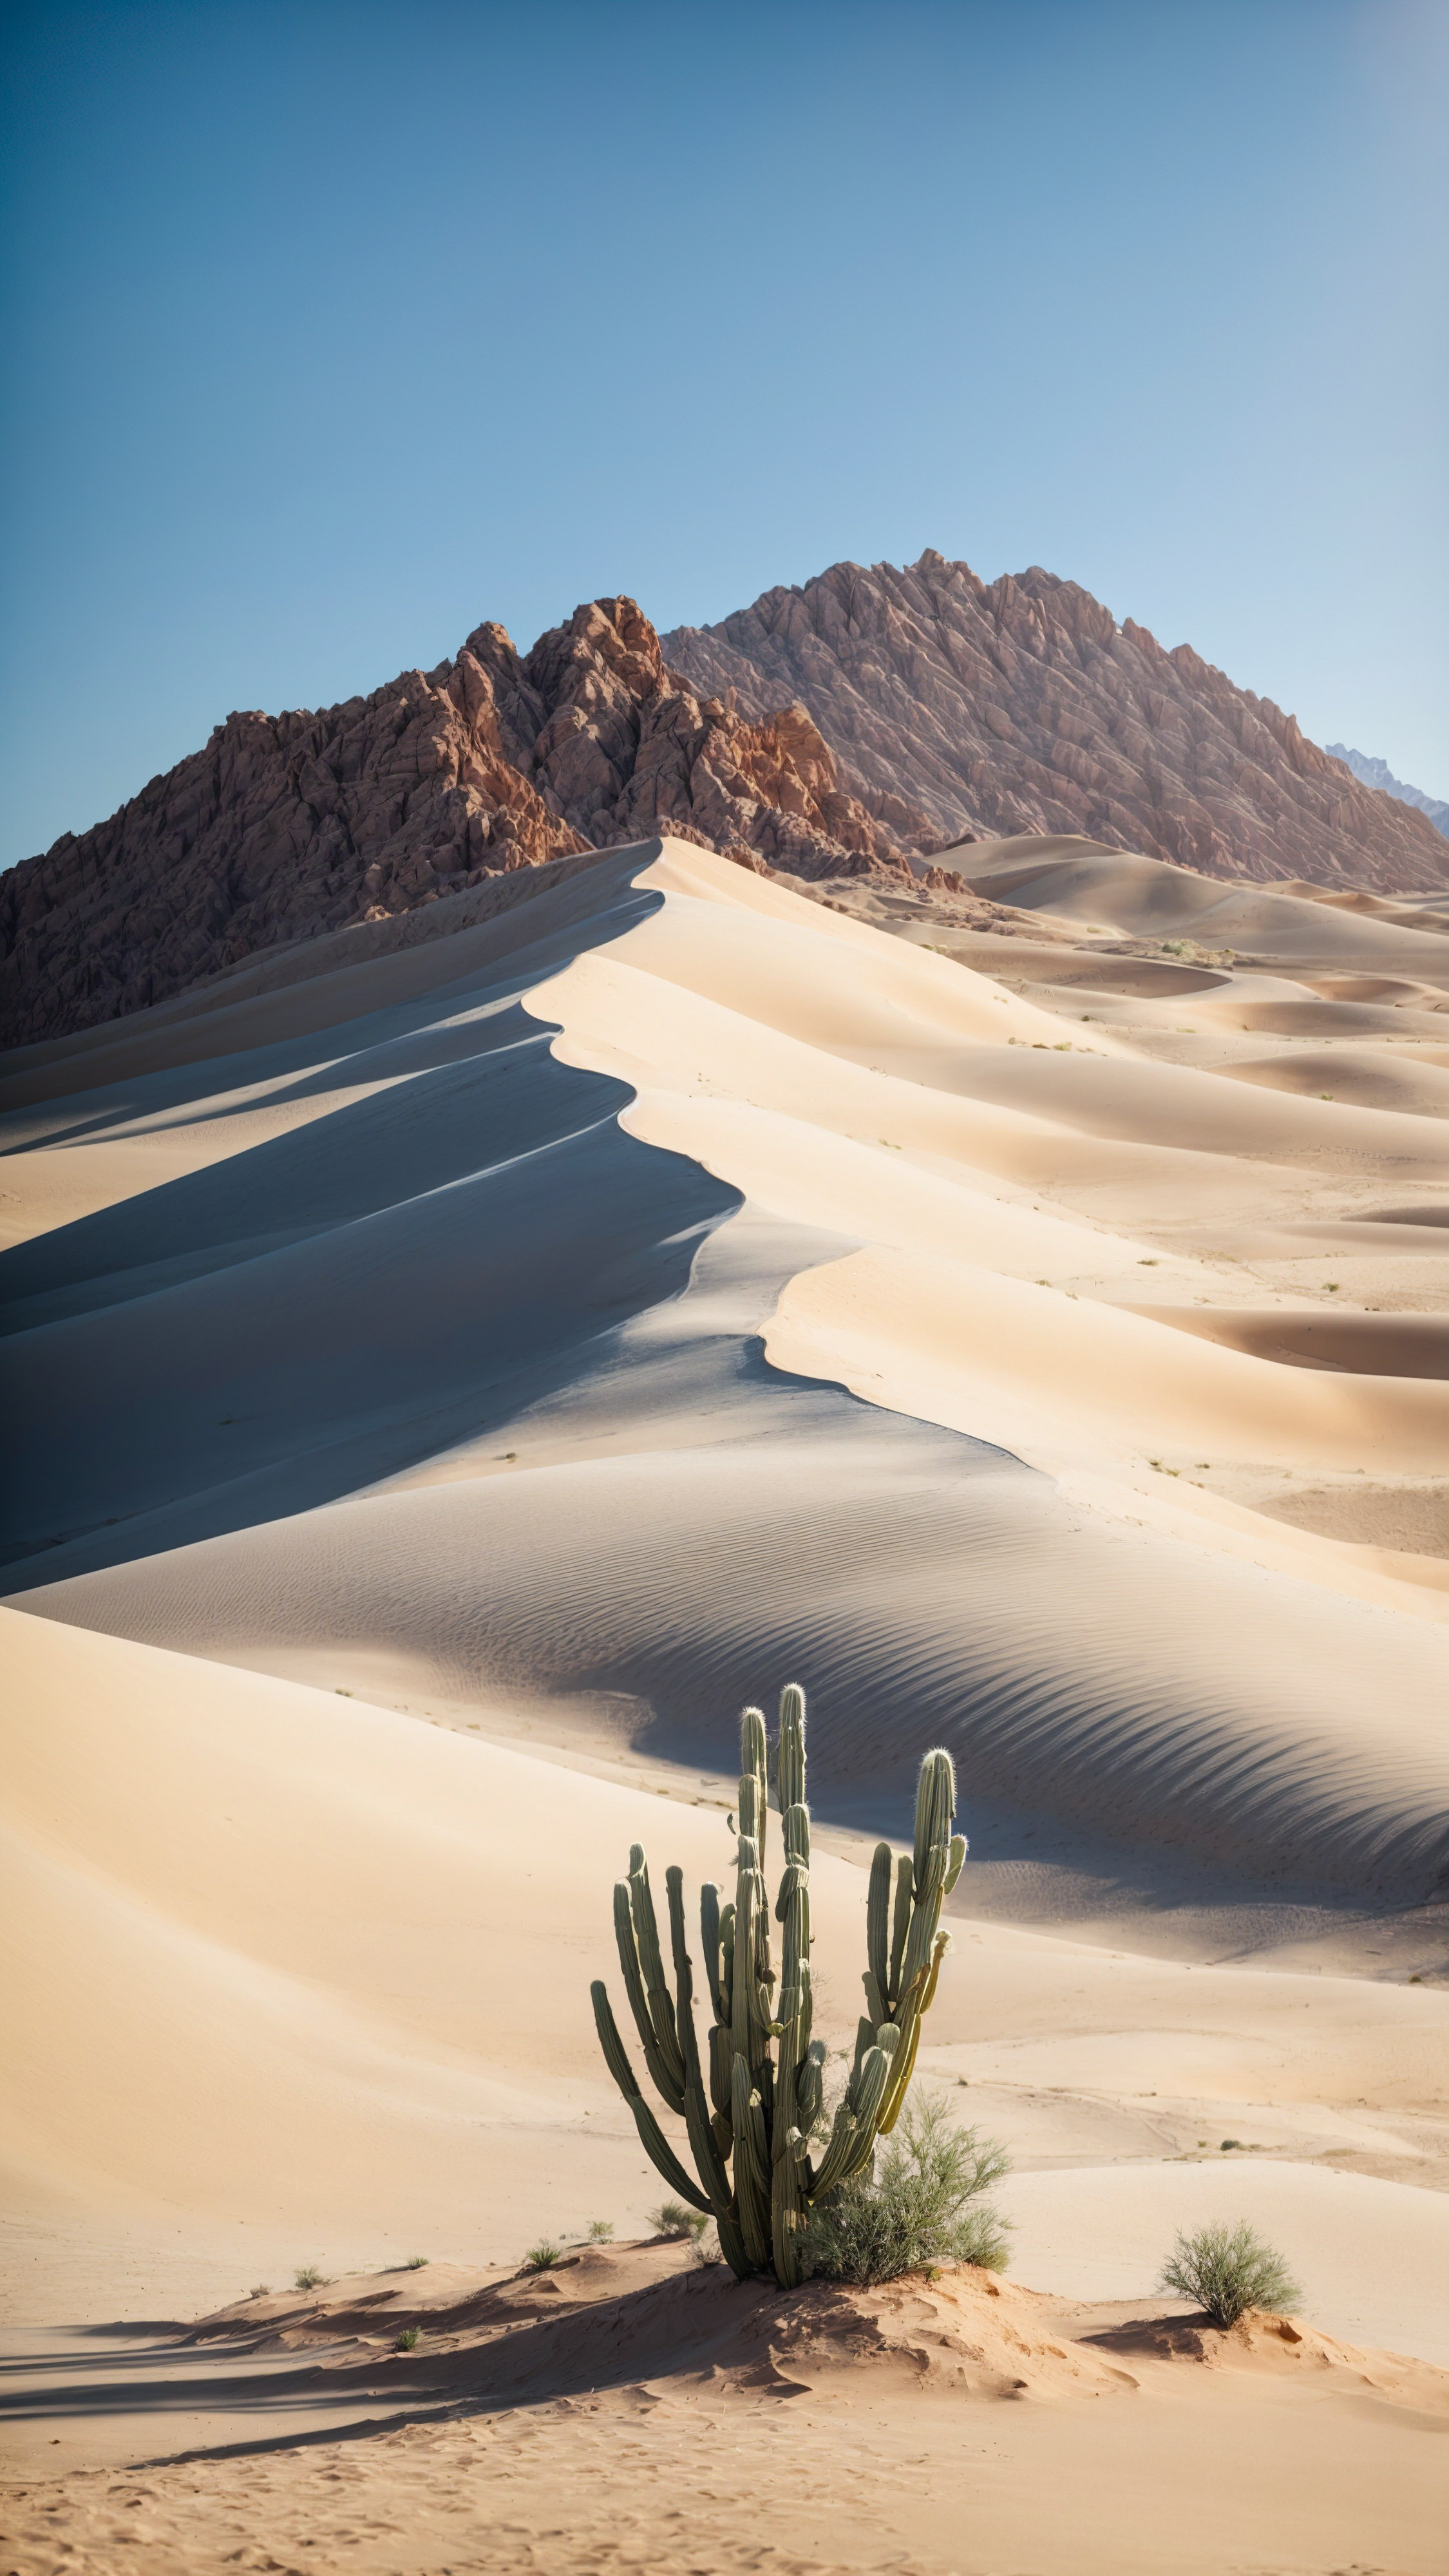 Découvrez le charme d'une montagne désertique avec une dune de sable et un cactus, sous un ciel bleu clair et un soleil, avec ce fond d'écran de vue sur la montagne.